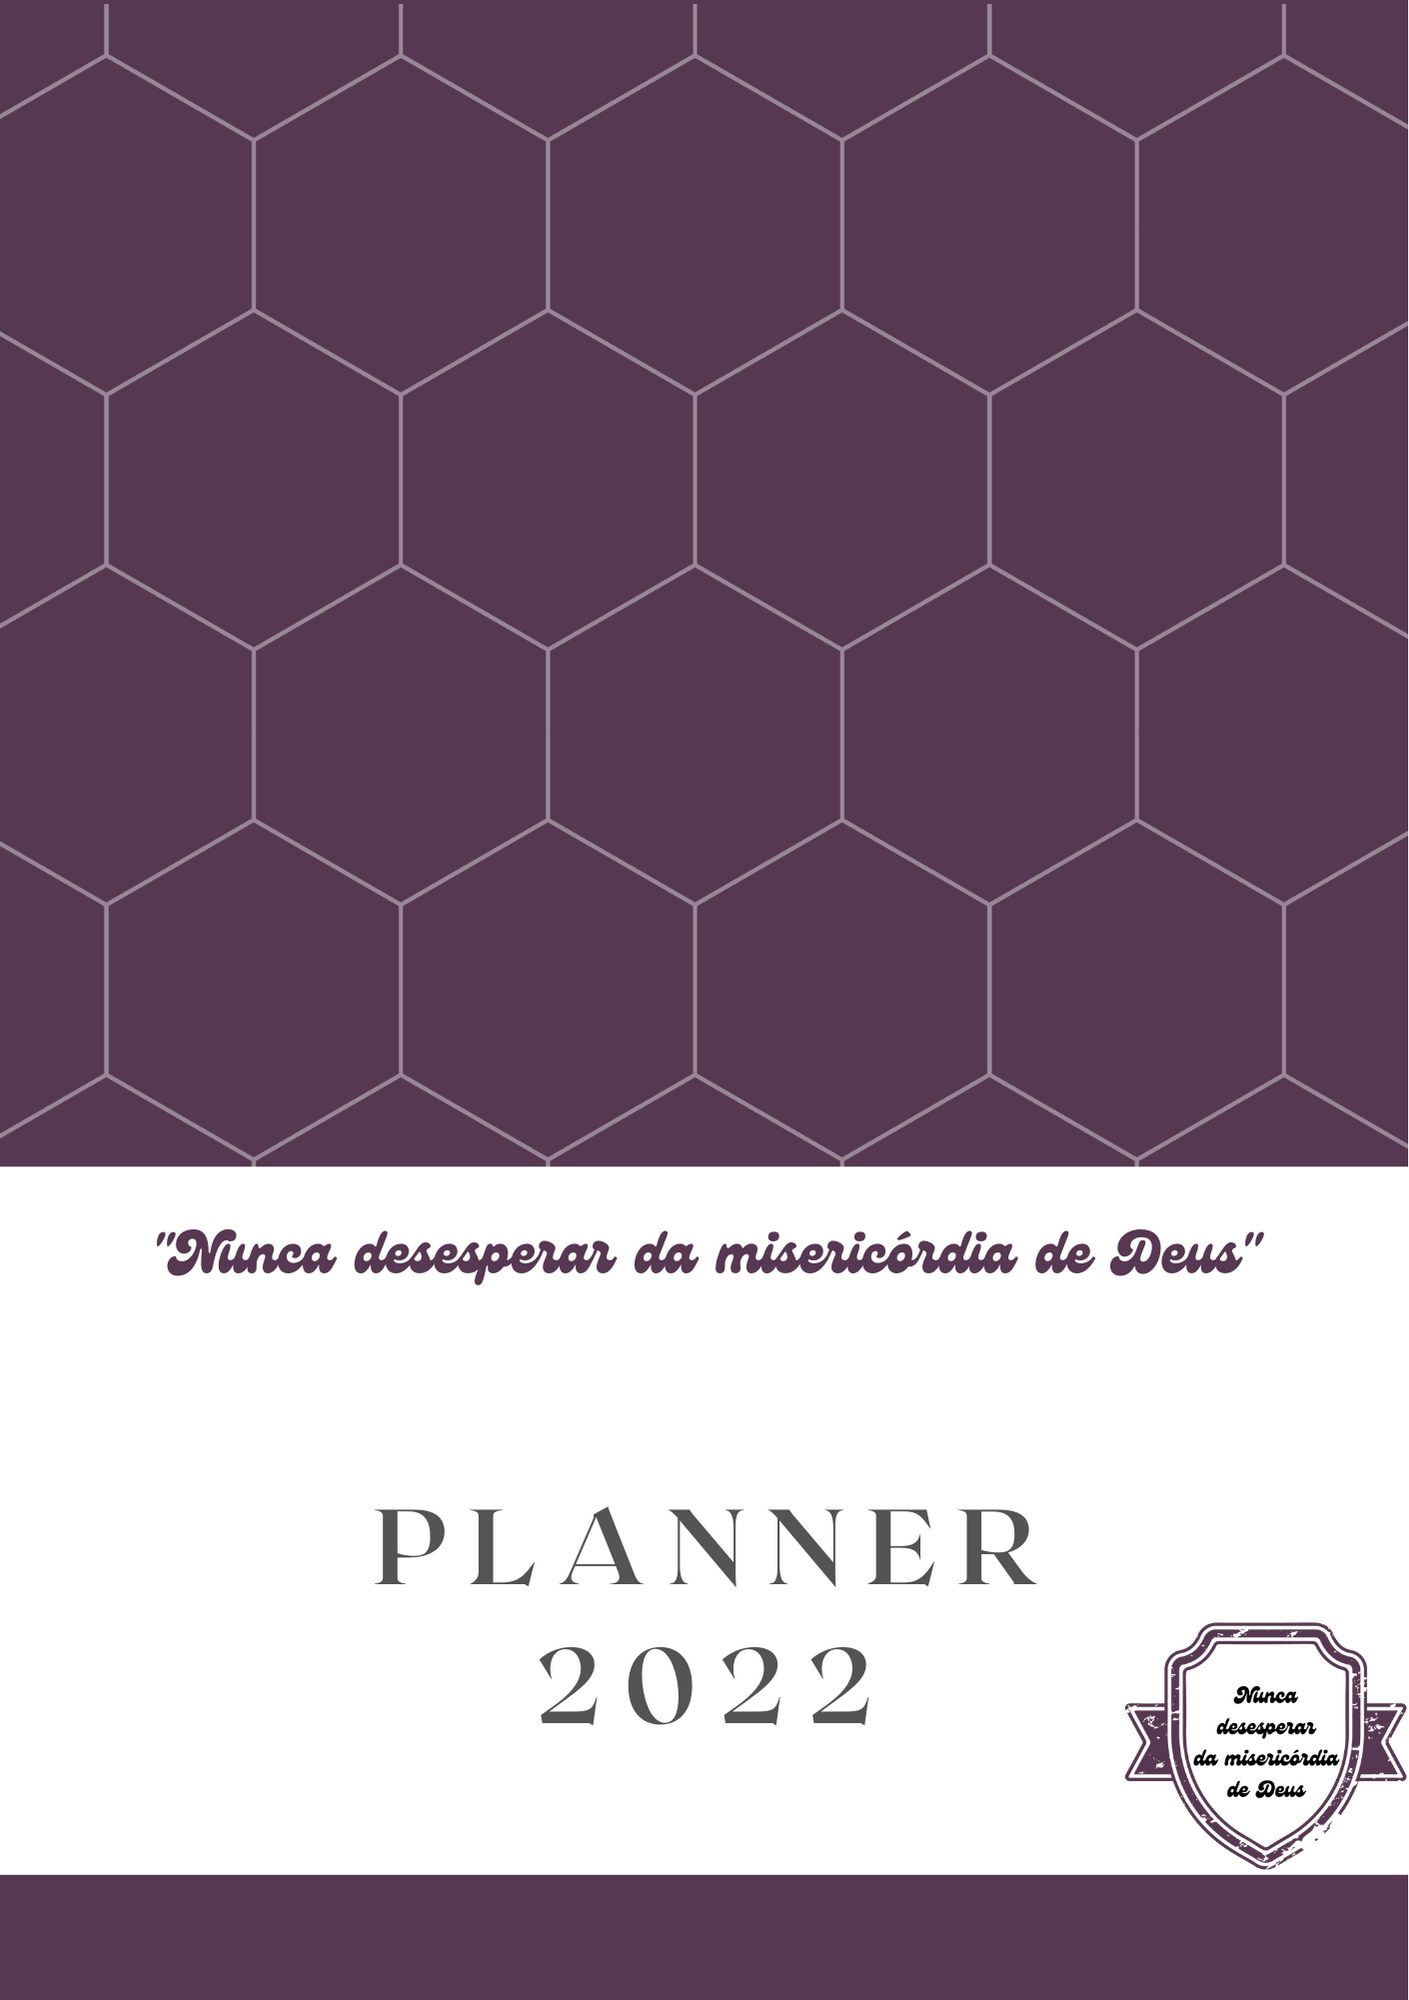 planner 2022 - modelo 9